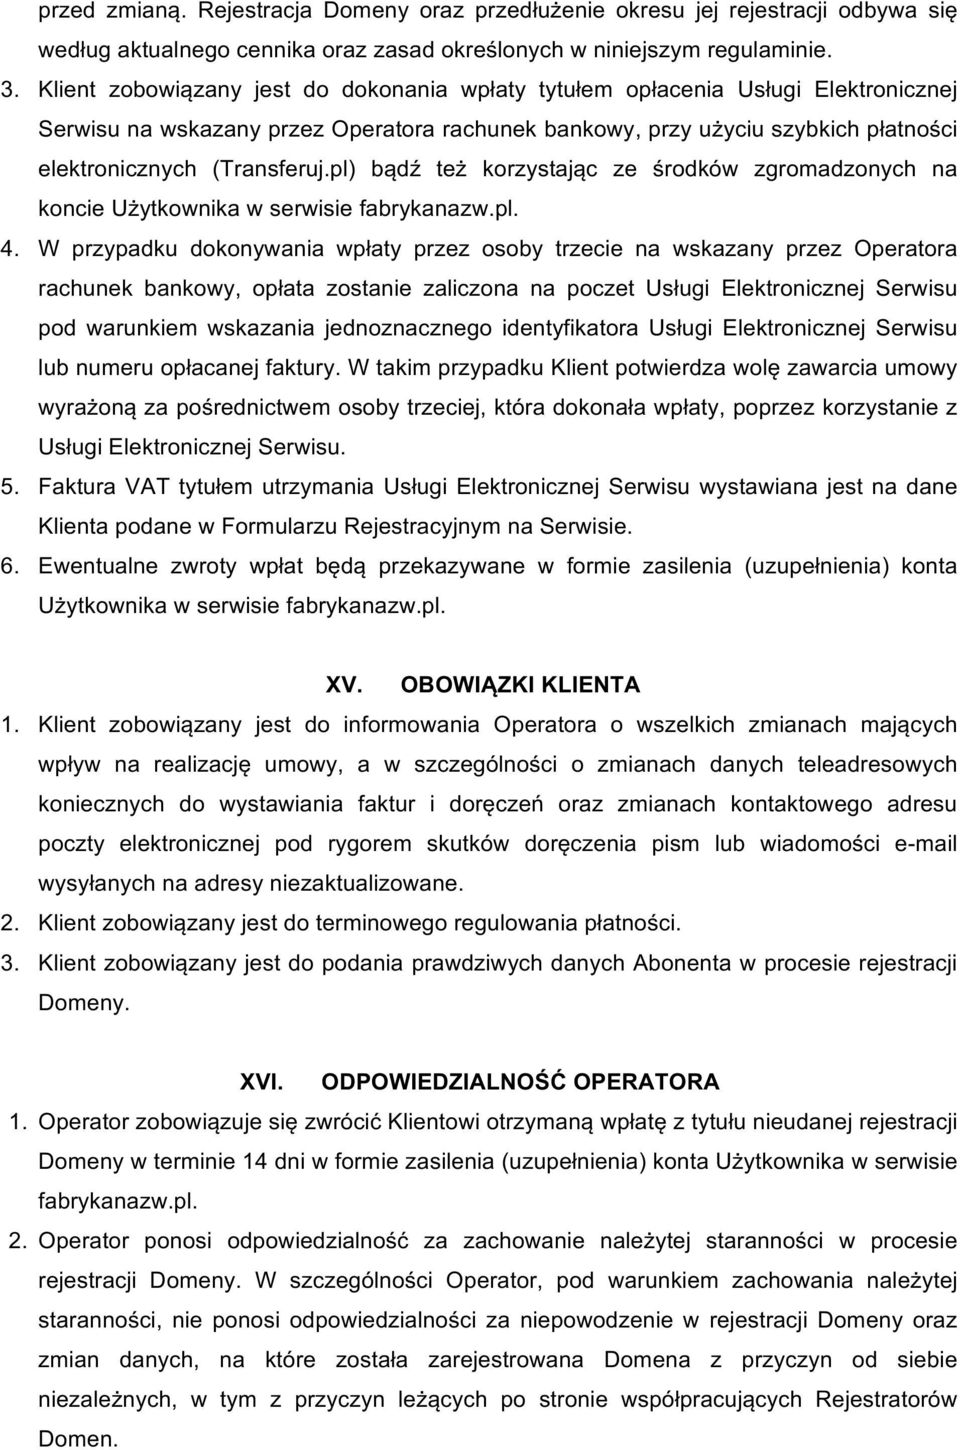 pl) bądź też korzystając ze środków zgromadzonych na koncieużytkownikawserwisiefabrykanazw.pl. 4.